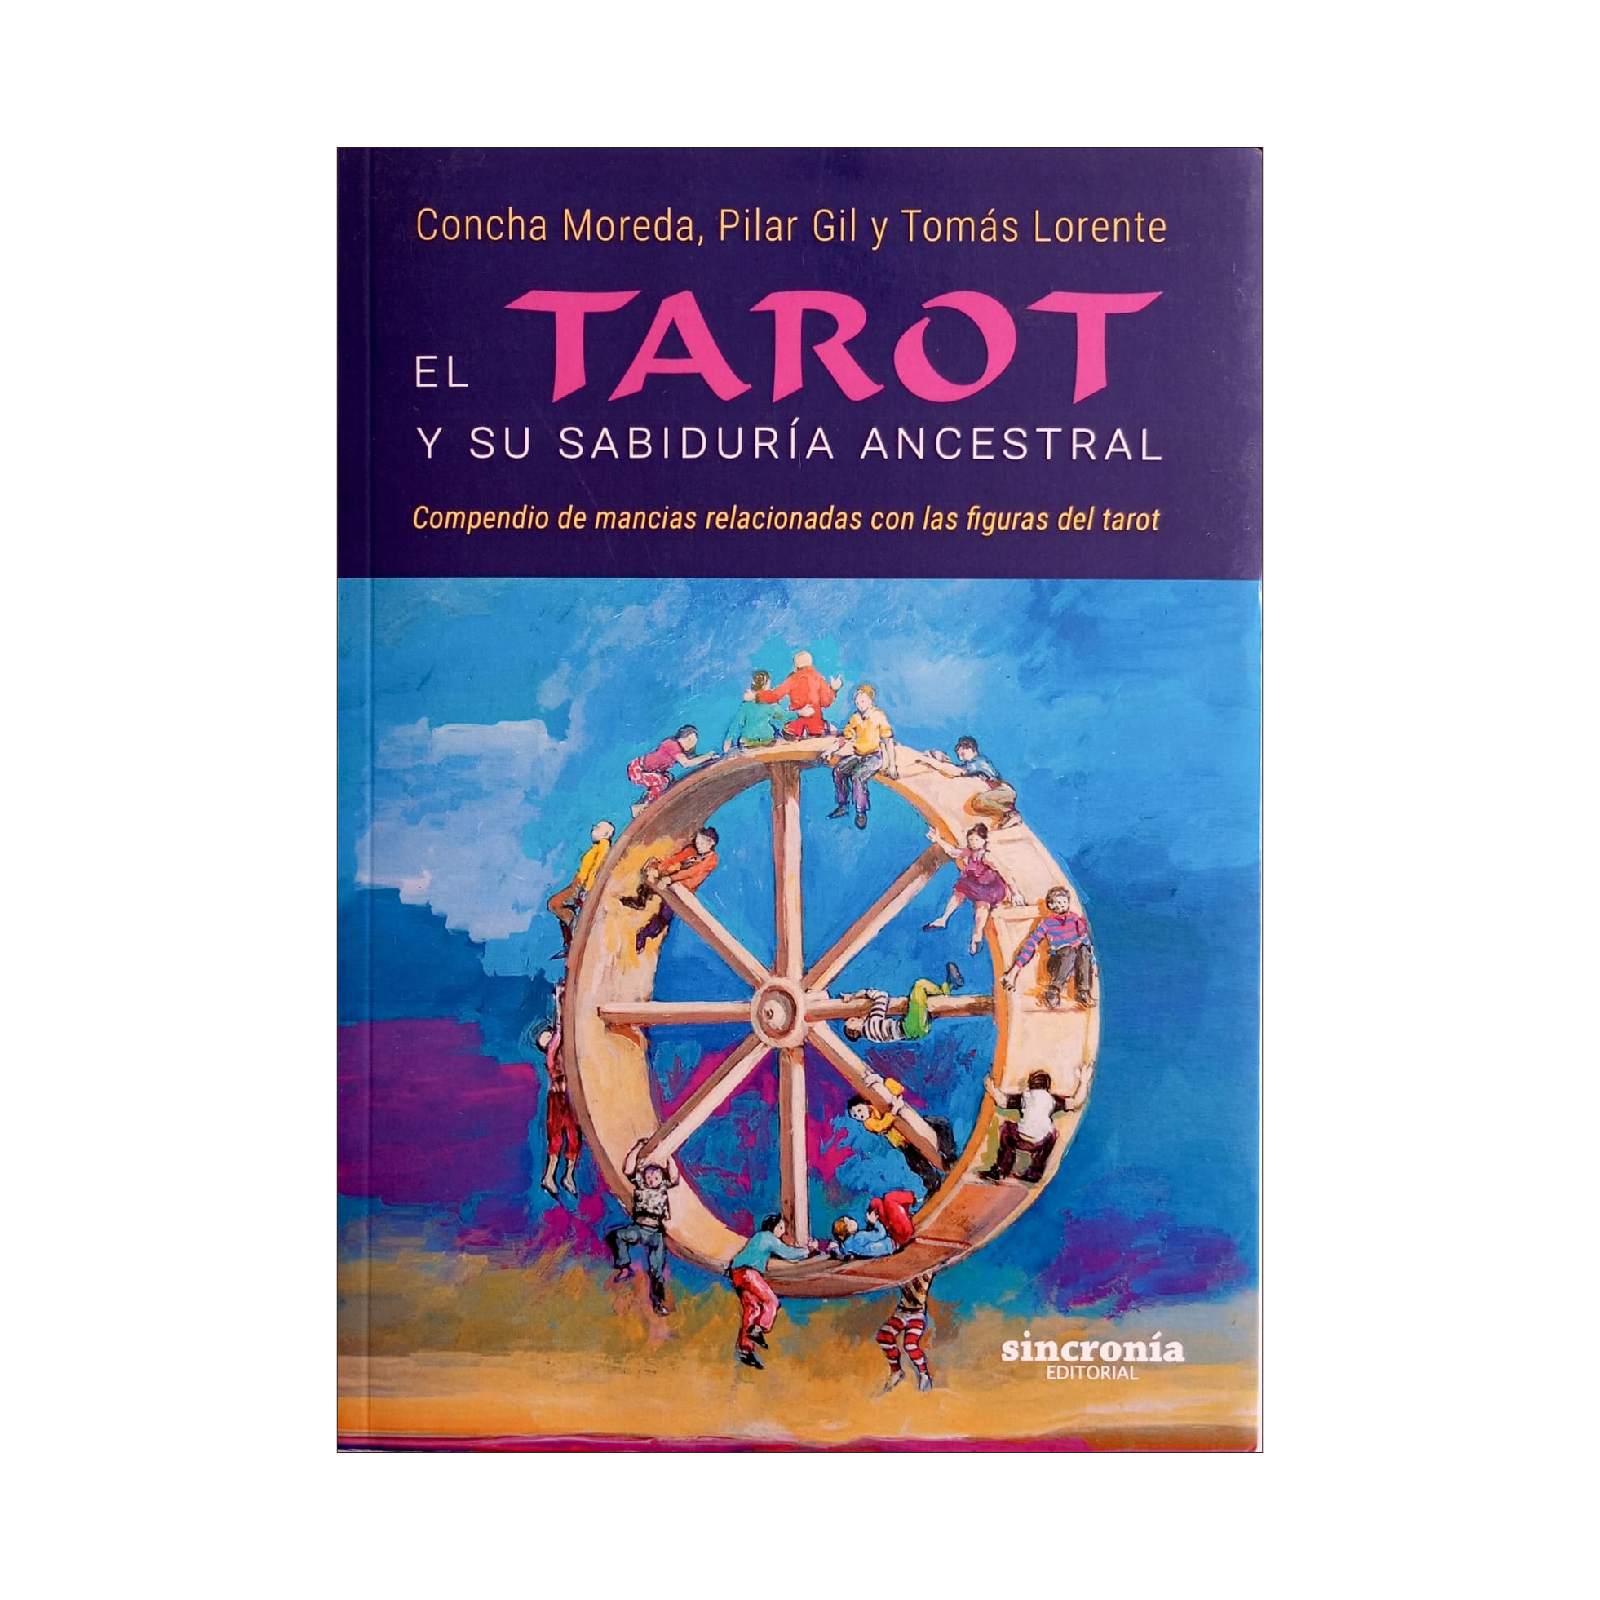 Cartas del tarot: una práctica divina ancestral